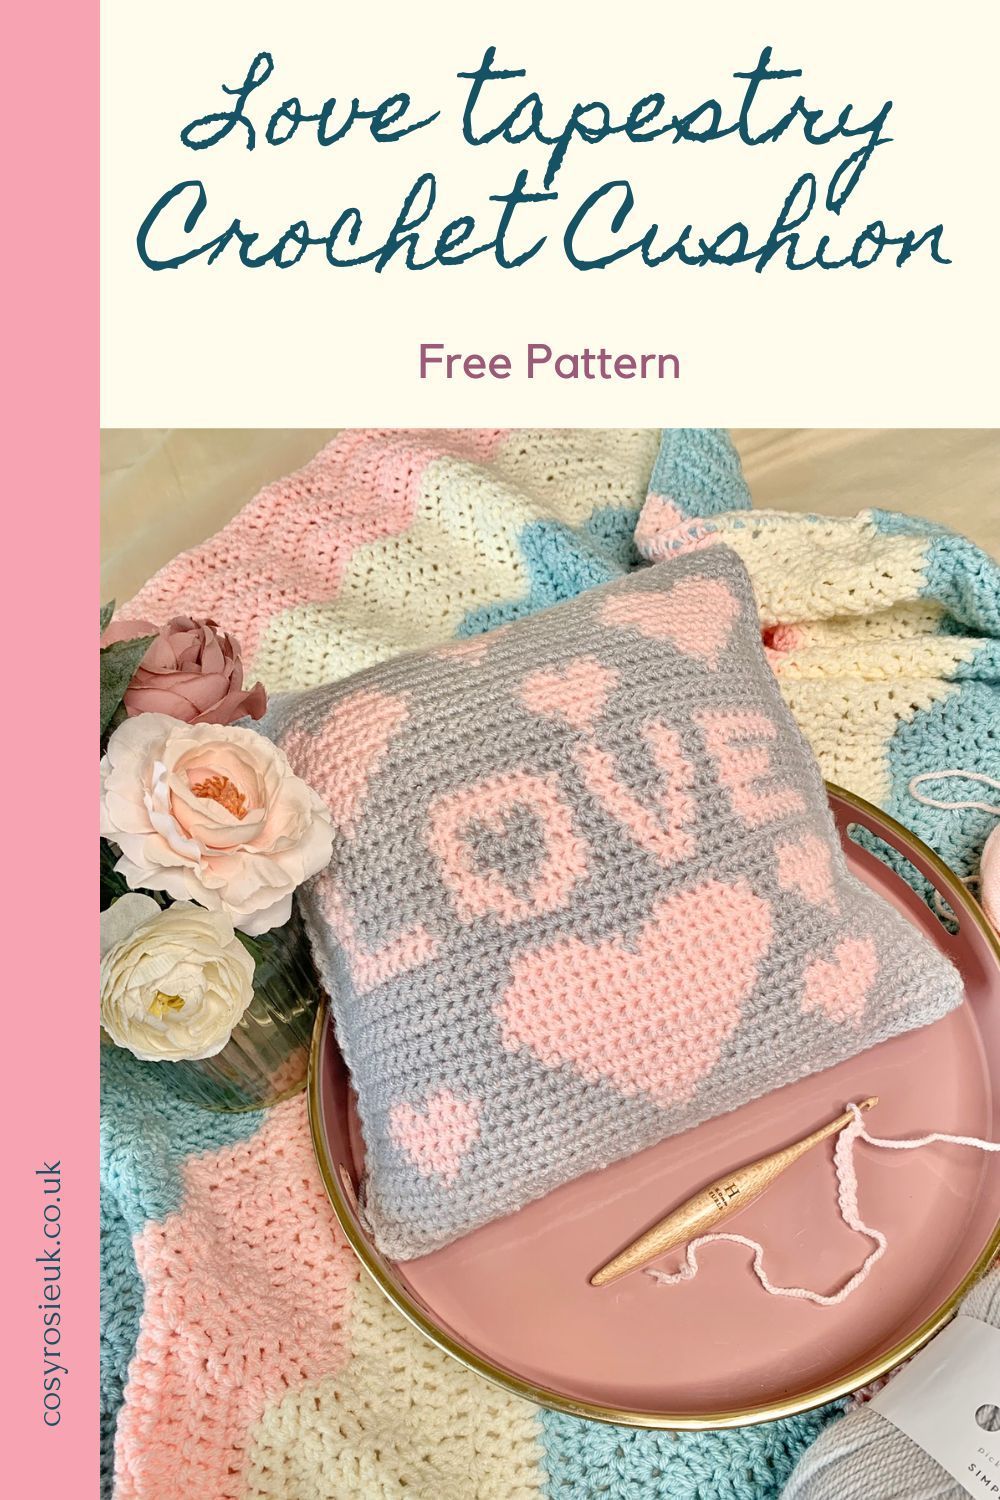 Love Hearts Tapestry Crochet Cushion